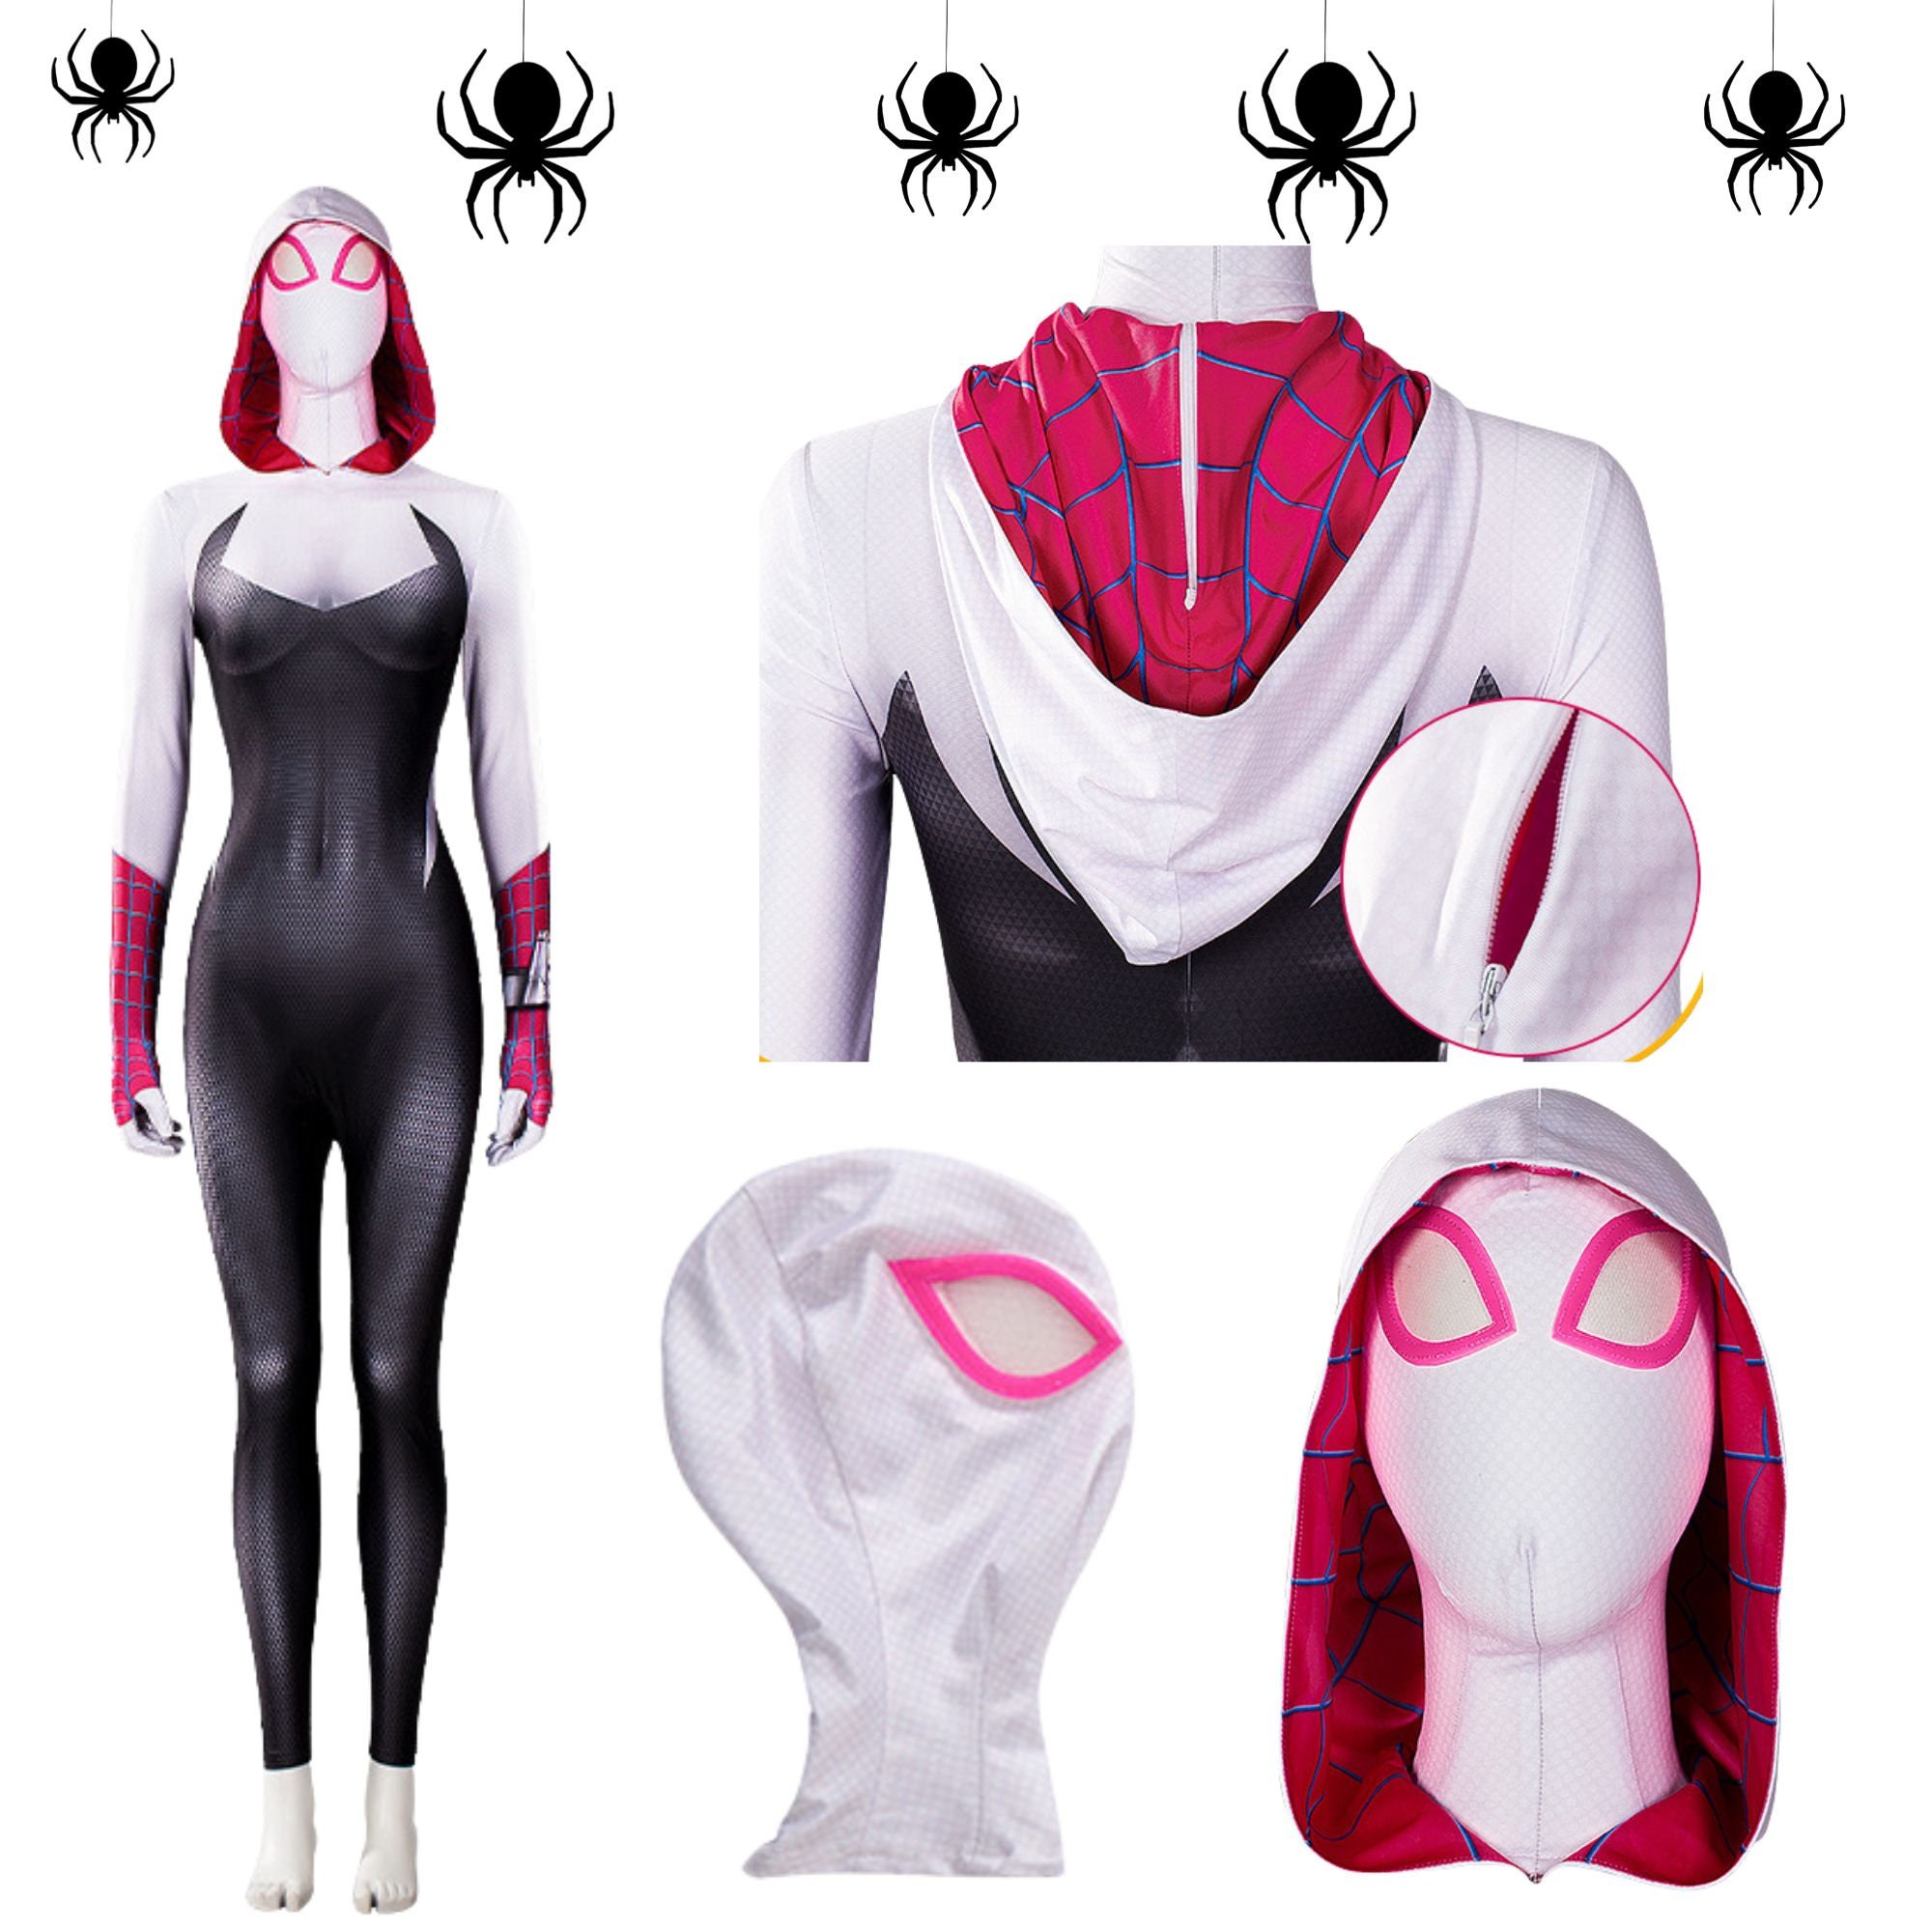 ✨Quick fan art warm up of Ghost Spider/Spider-Gwen from Spider